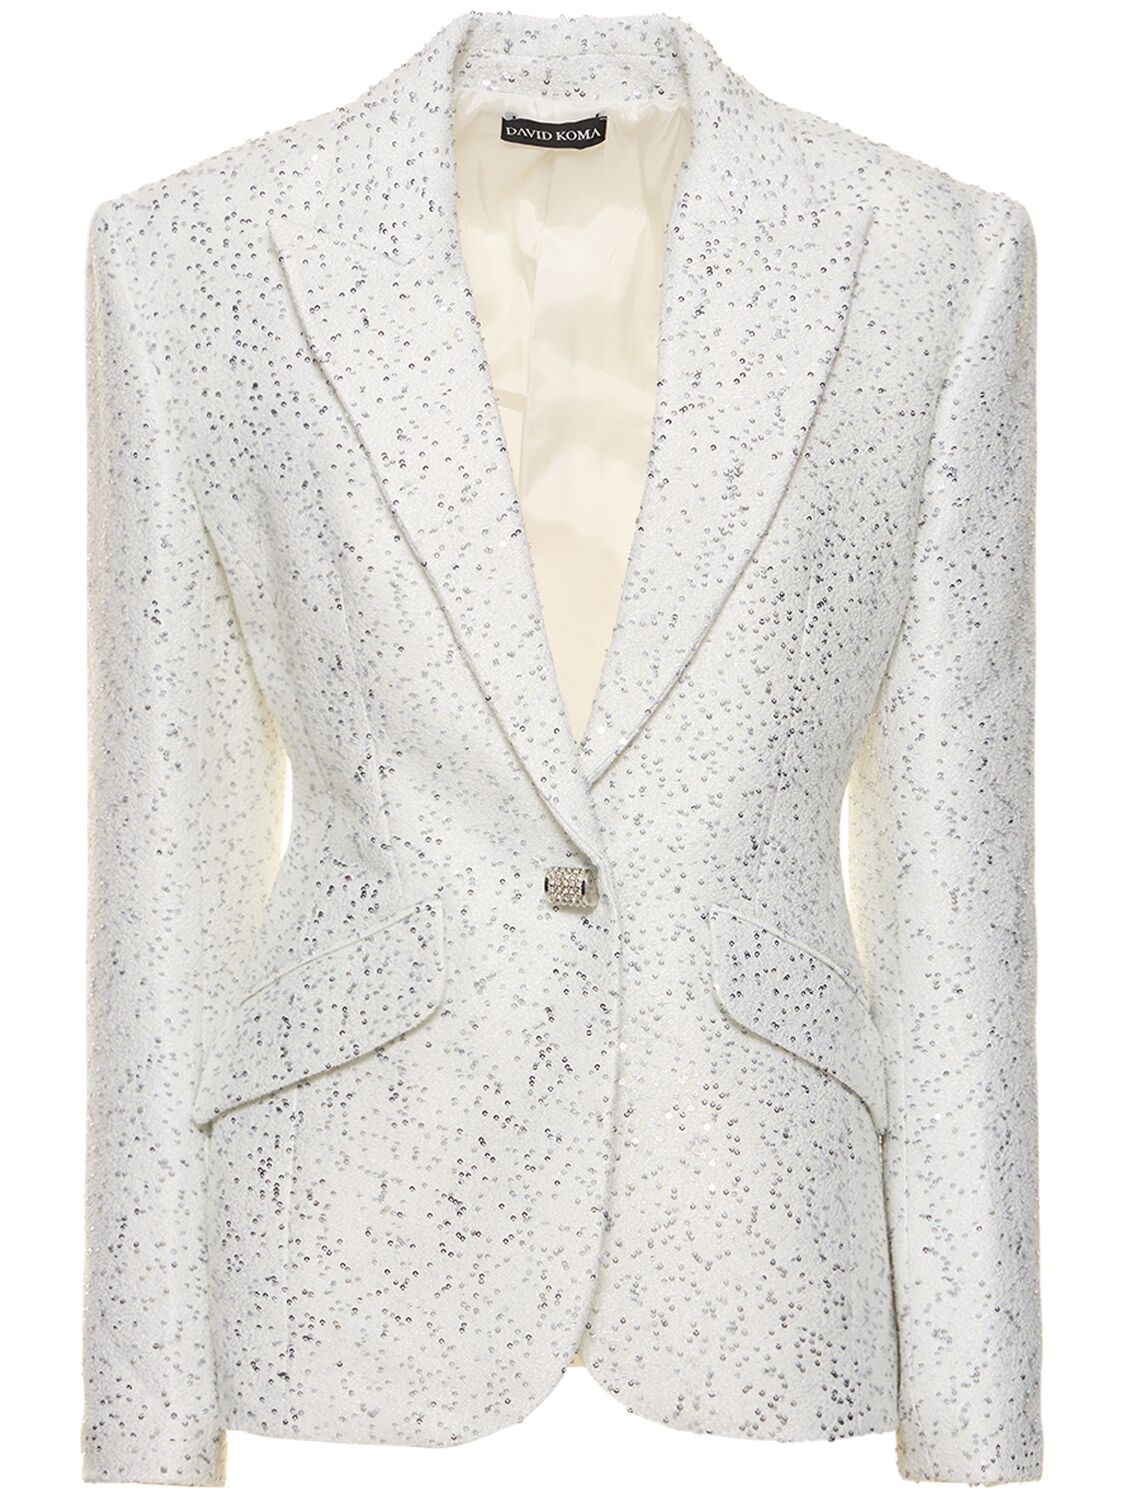 Image of Crystal & Sequin Embellished Jacket